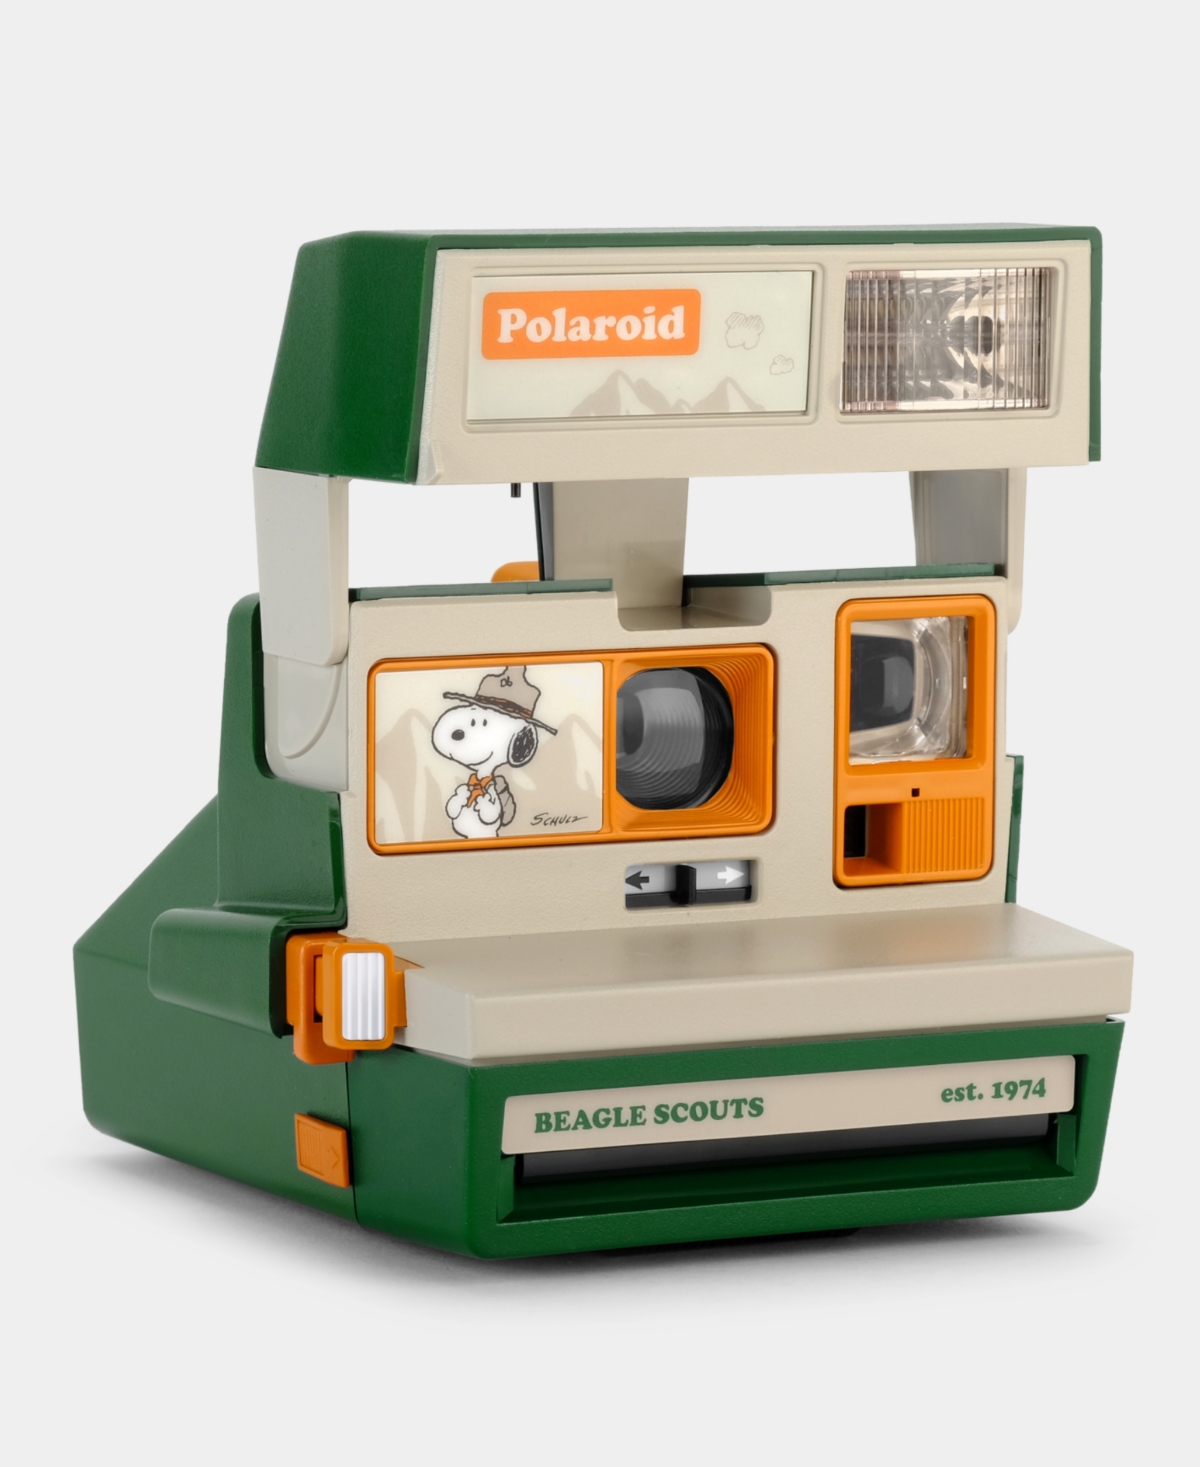 Retrospekt Beagle Scouts Polaroid 600 Instant Film Camera In Green